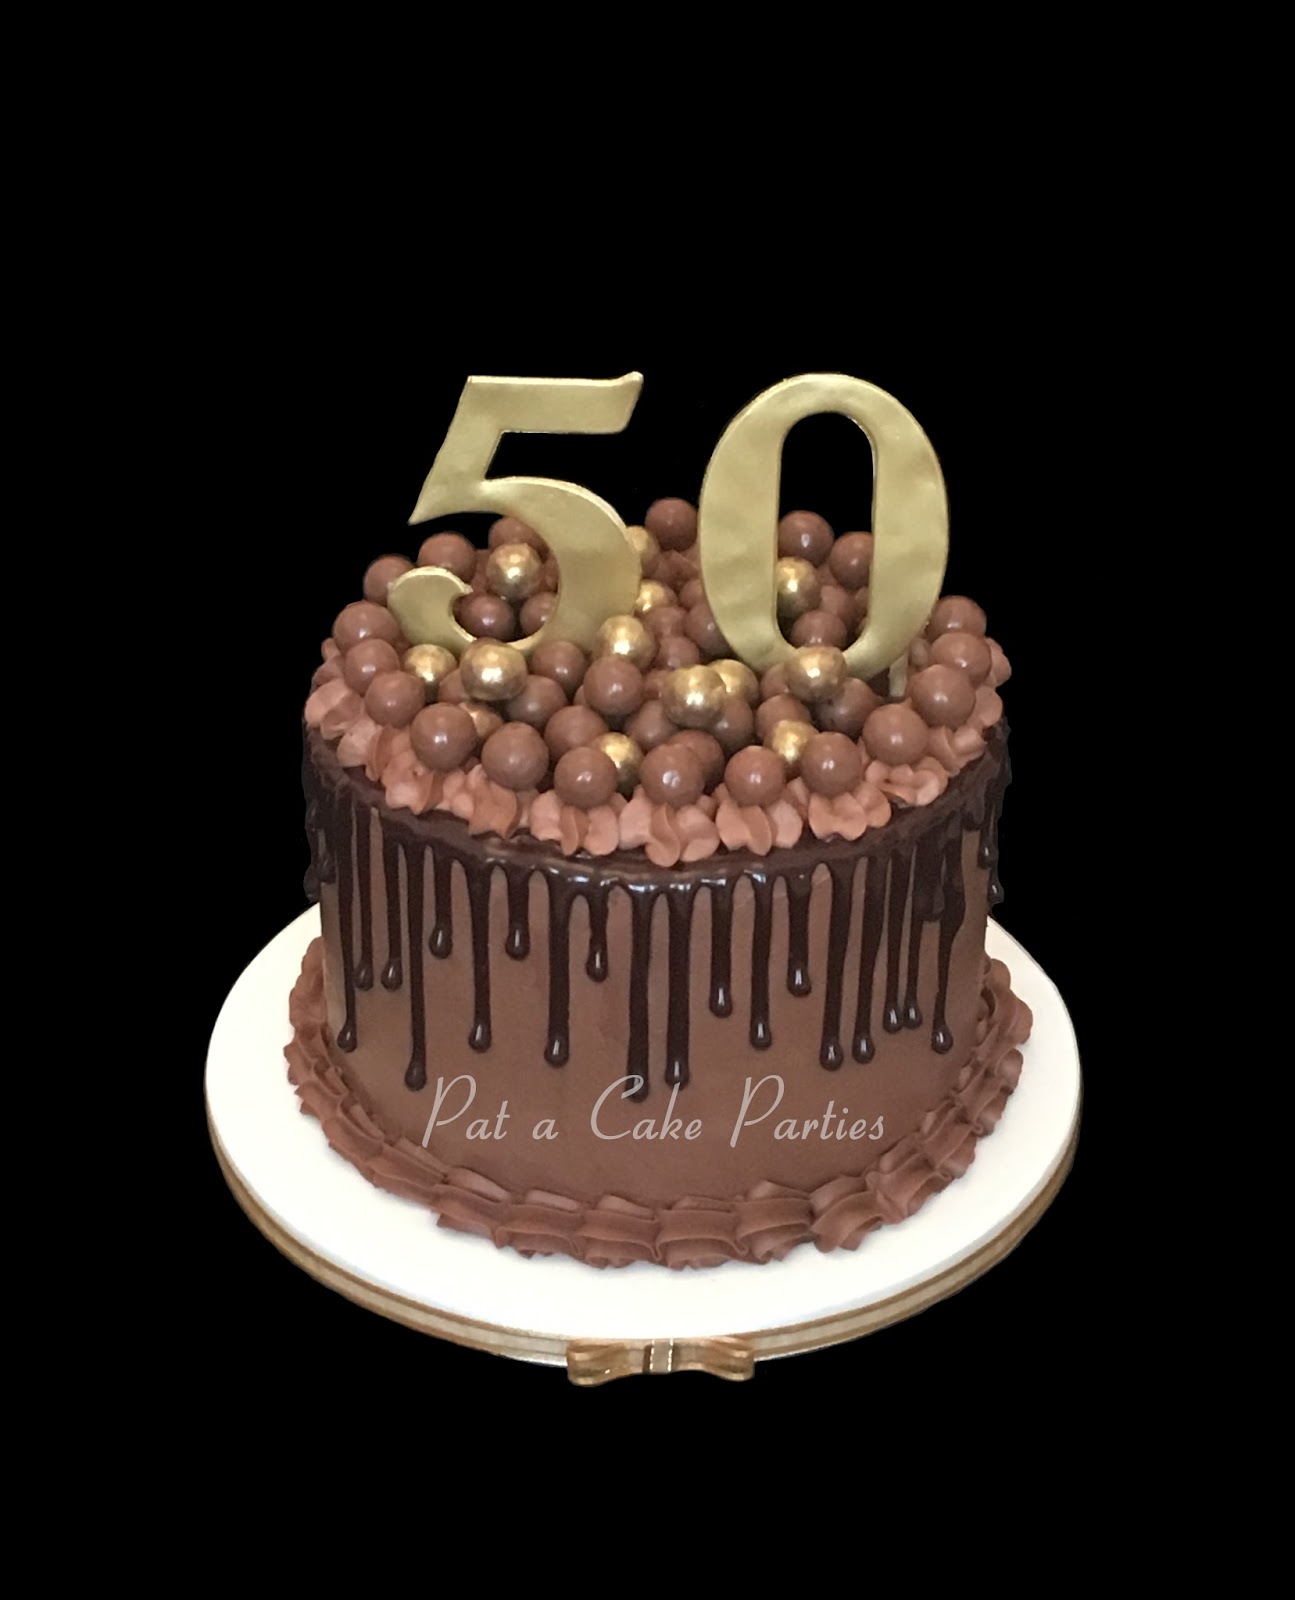 Pat-a-Cake Parties: 50th Birthday Drip Cake